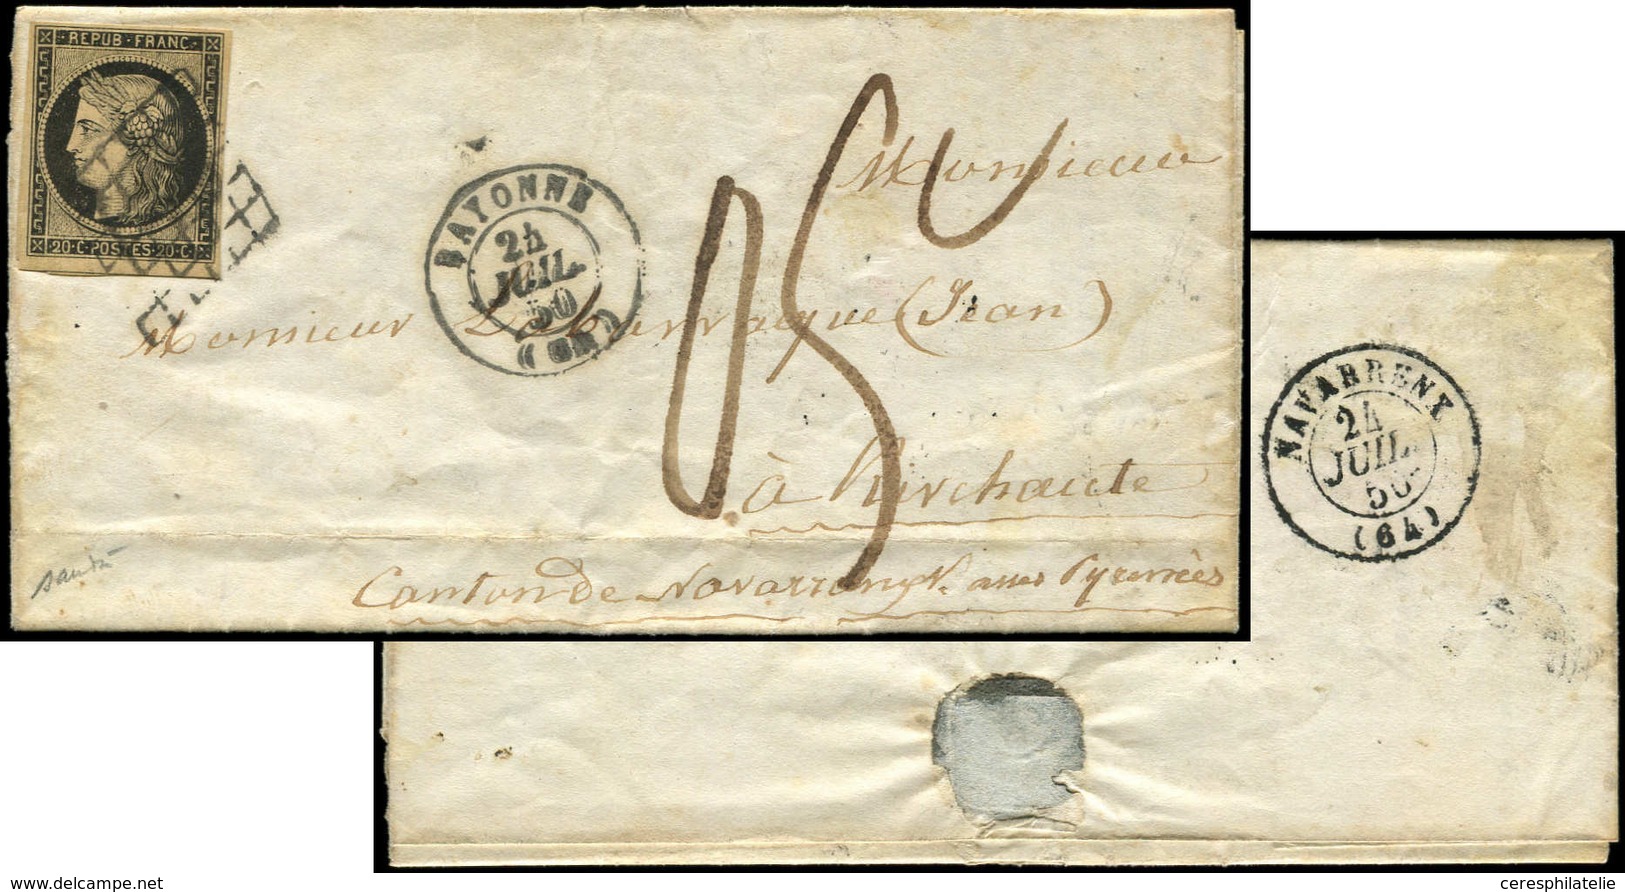 Let EMISSION DE 1849 - 3    20c. Noir Sur Jaune, Obl. GRILLE S. LAC, Càd T15 BAYONNE 24/7/50 Et Taxe 05c., Arr. NAVARREN - 1849-1850 Cérès